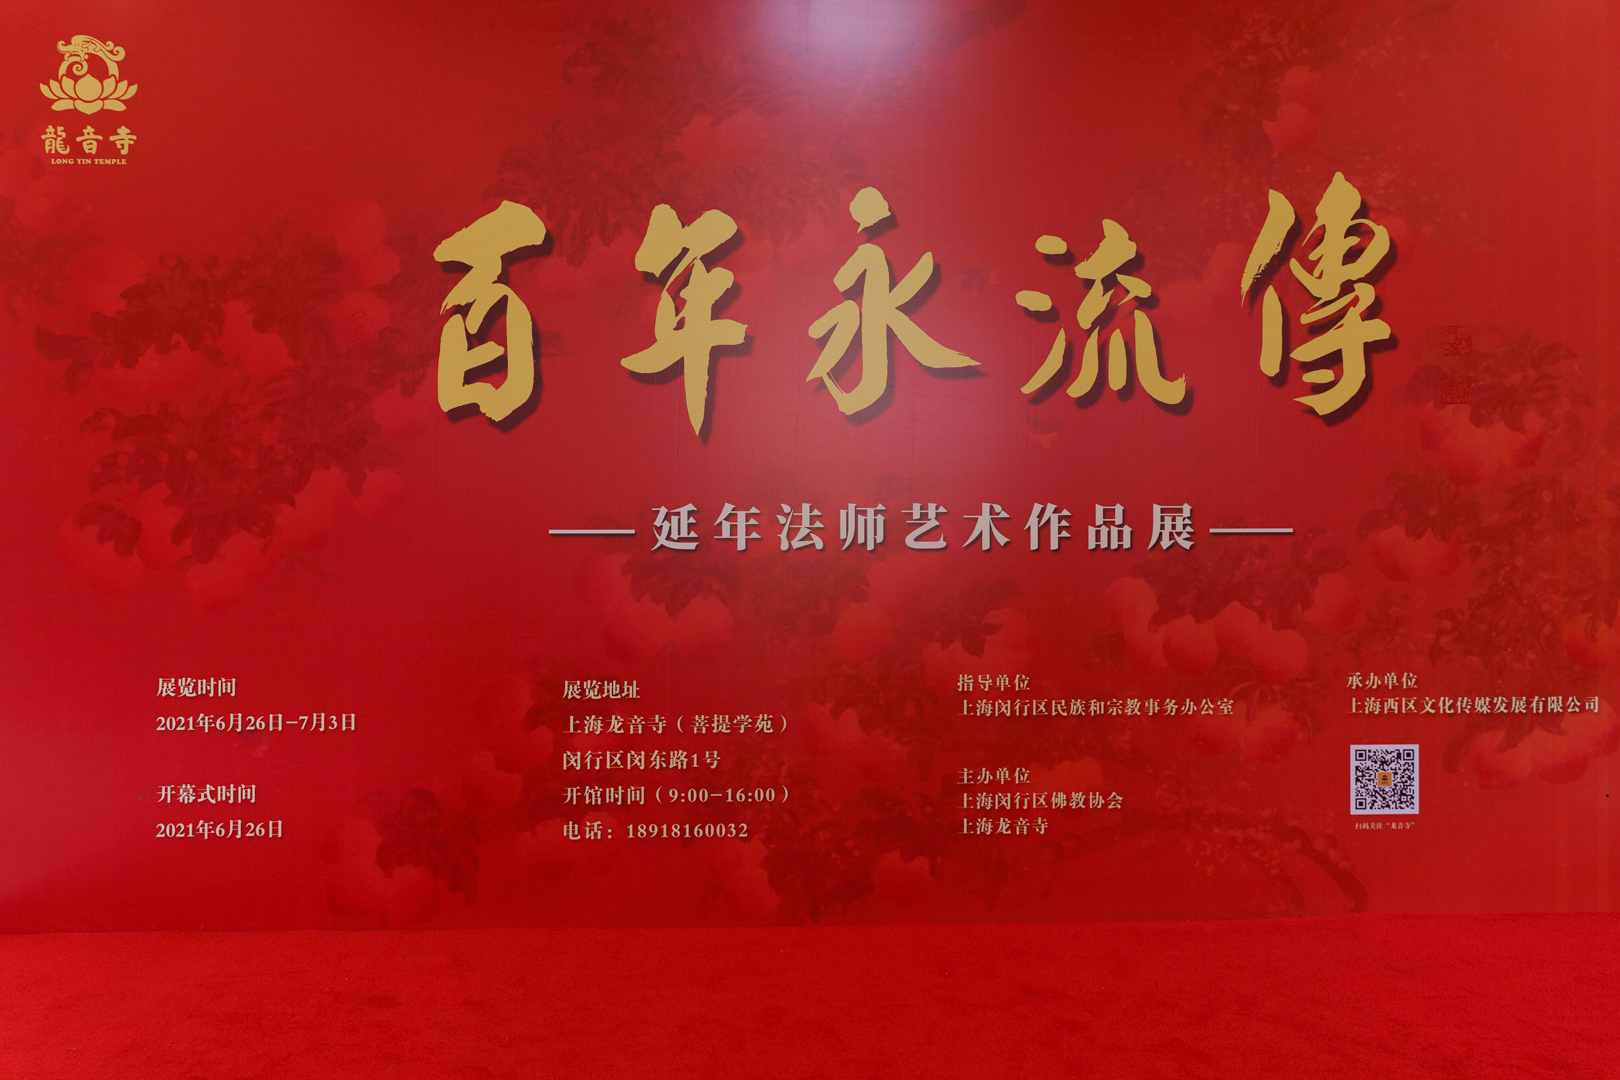 百年永流传——上海龙音寺举办延年法师艺术作品展